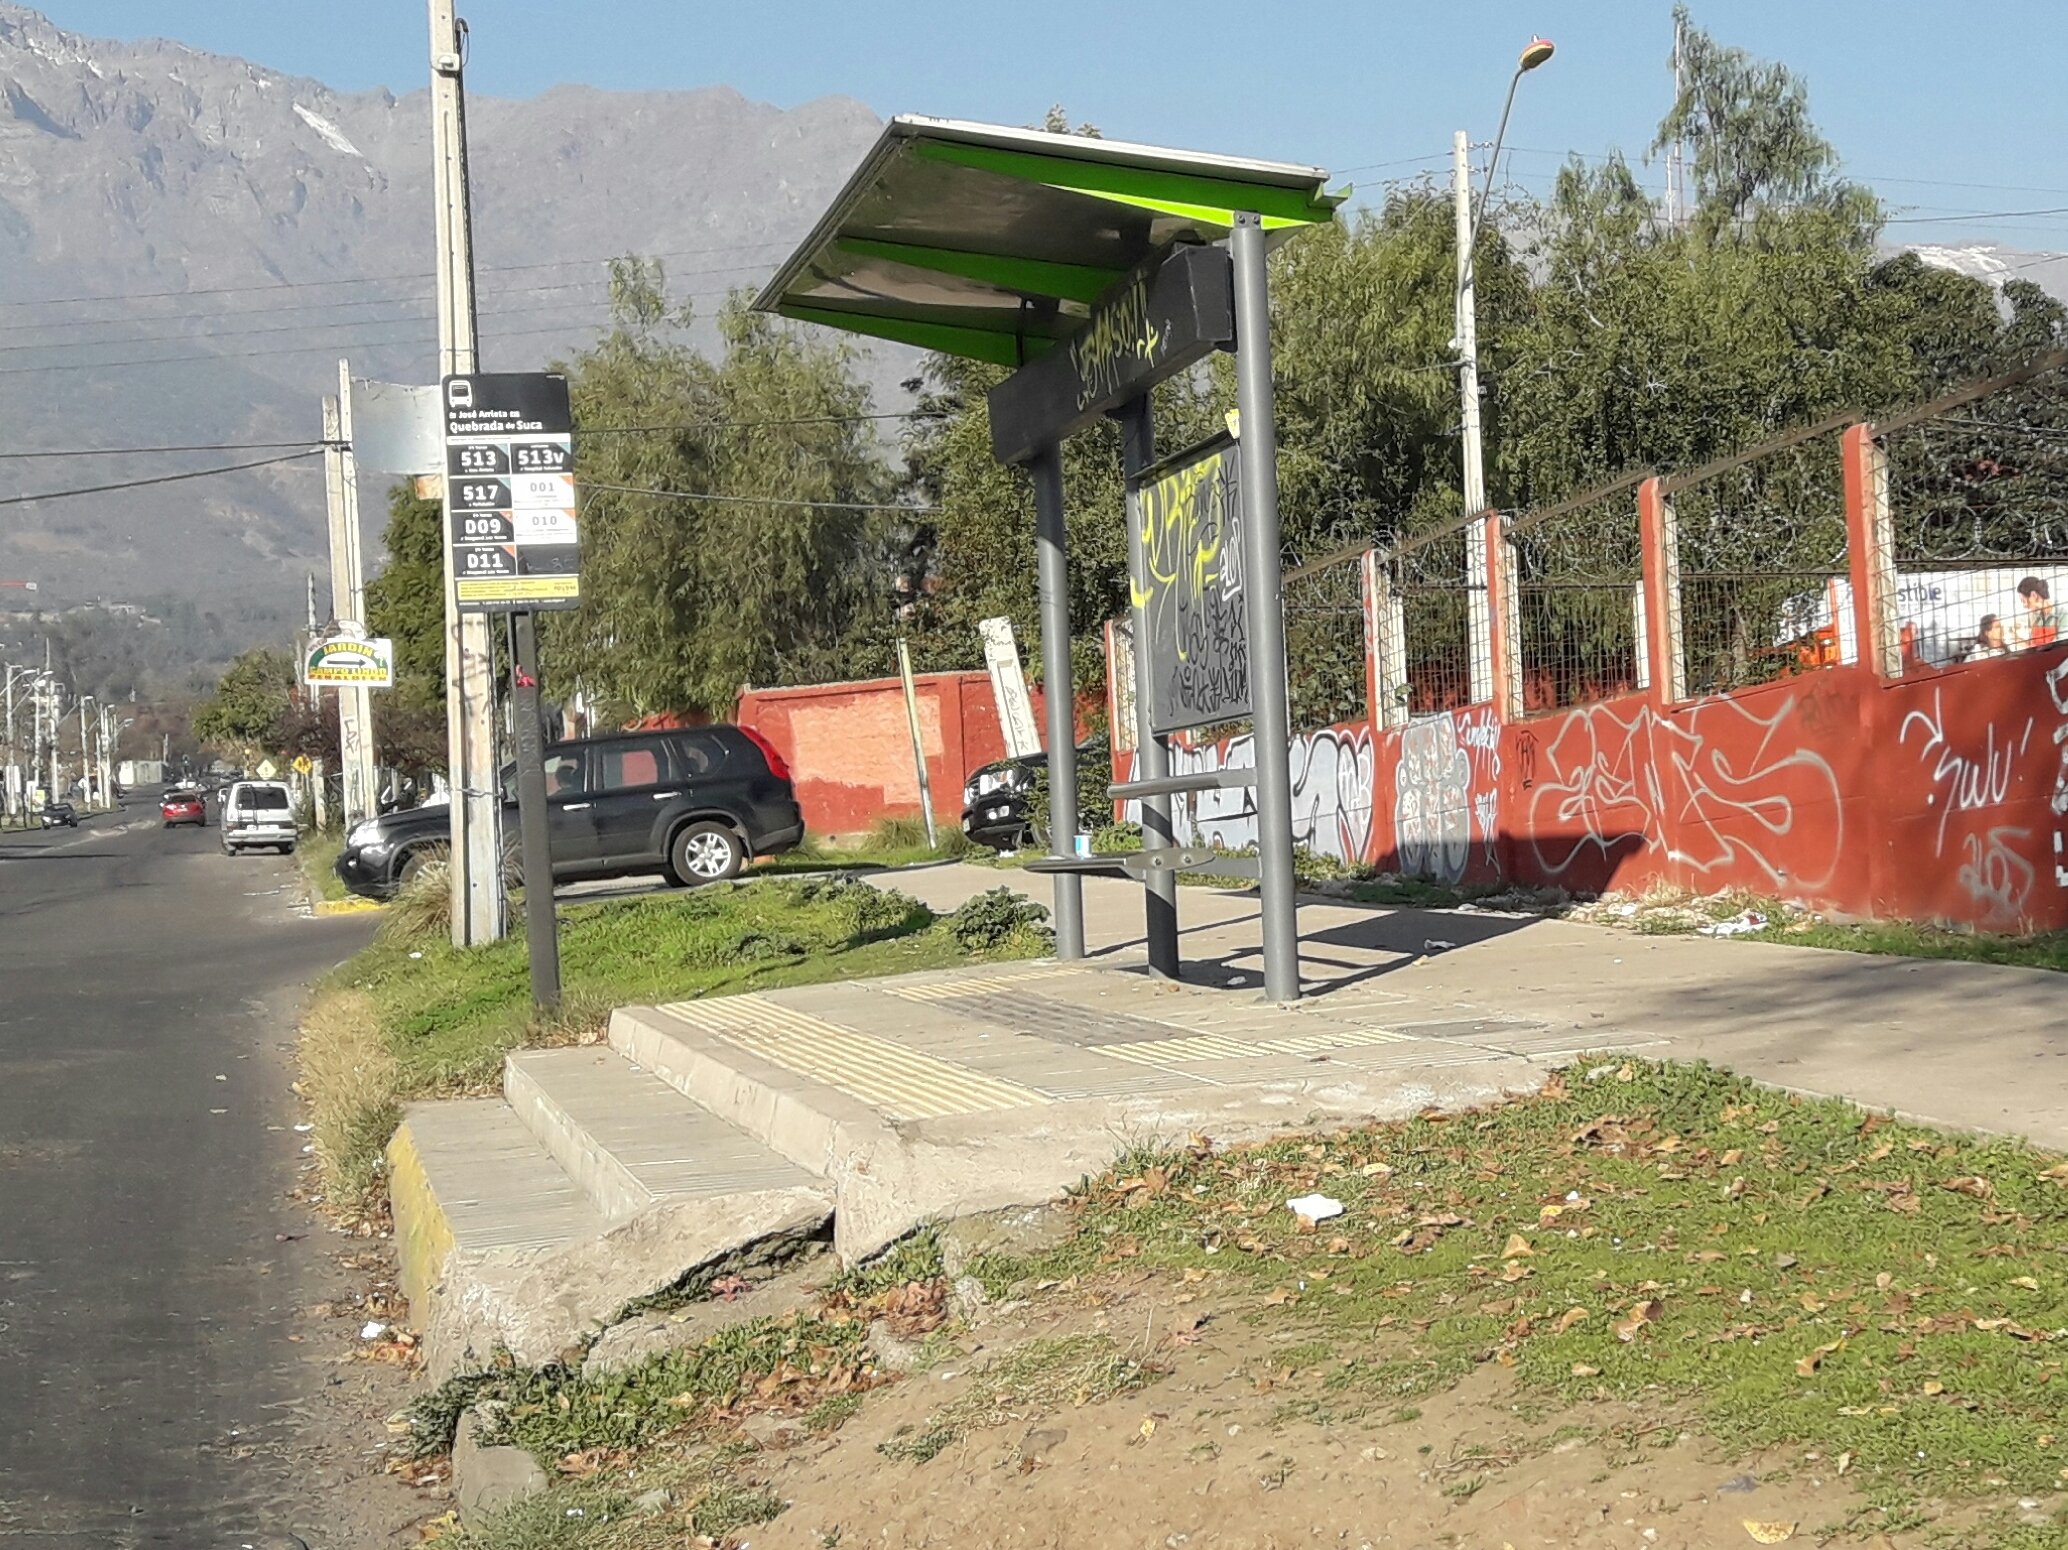 Paradero inaccesible comuna Santiago con peldaños para acceder al bus